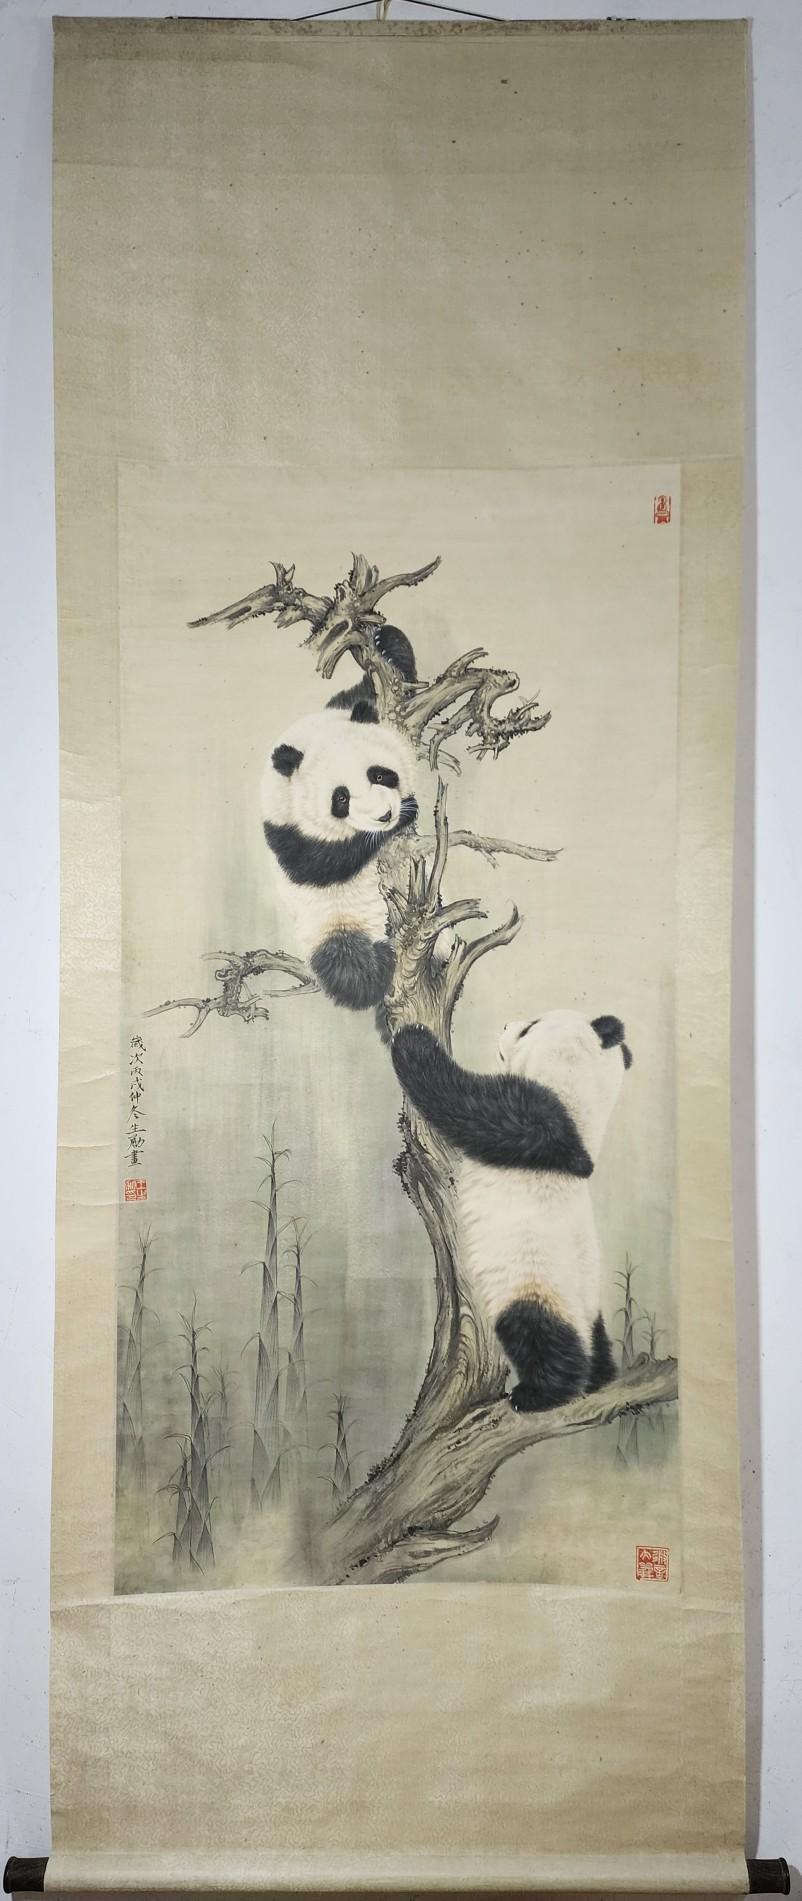 Dieses Handgemälde von zwei kletternden Pandas ist ein ganz besonderes Sammlerstück des berühmten chinesischen Künstlers Wang Shengyong 

Details zur Malerei:
MATERIAL: Papier
Format des Malpapiers: 68 cm Breite
135cm Höhe
Mit Ursprung in China
